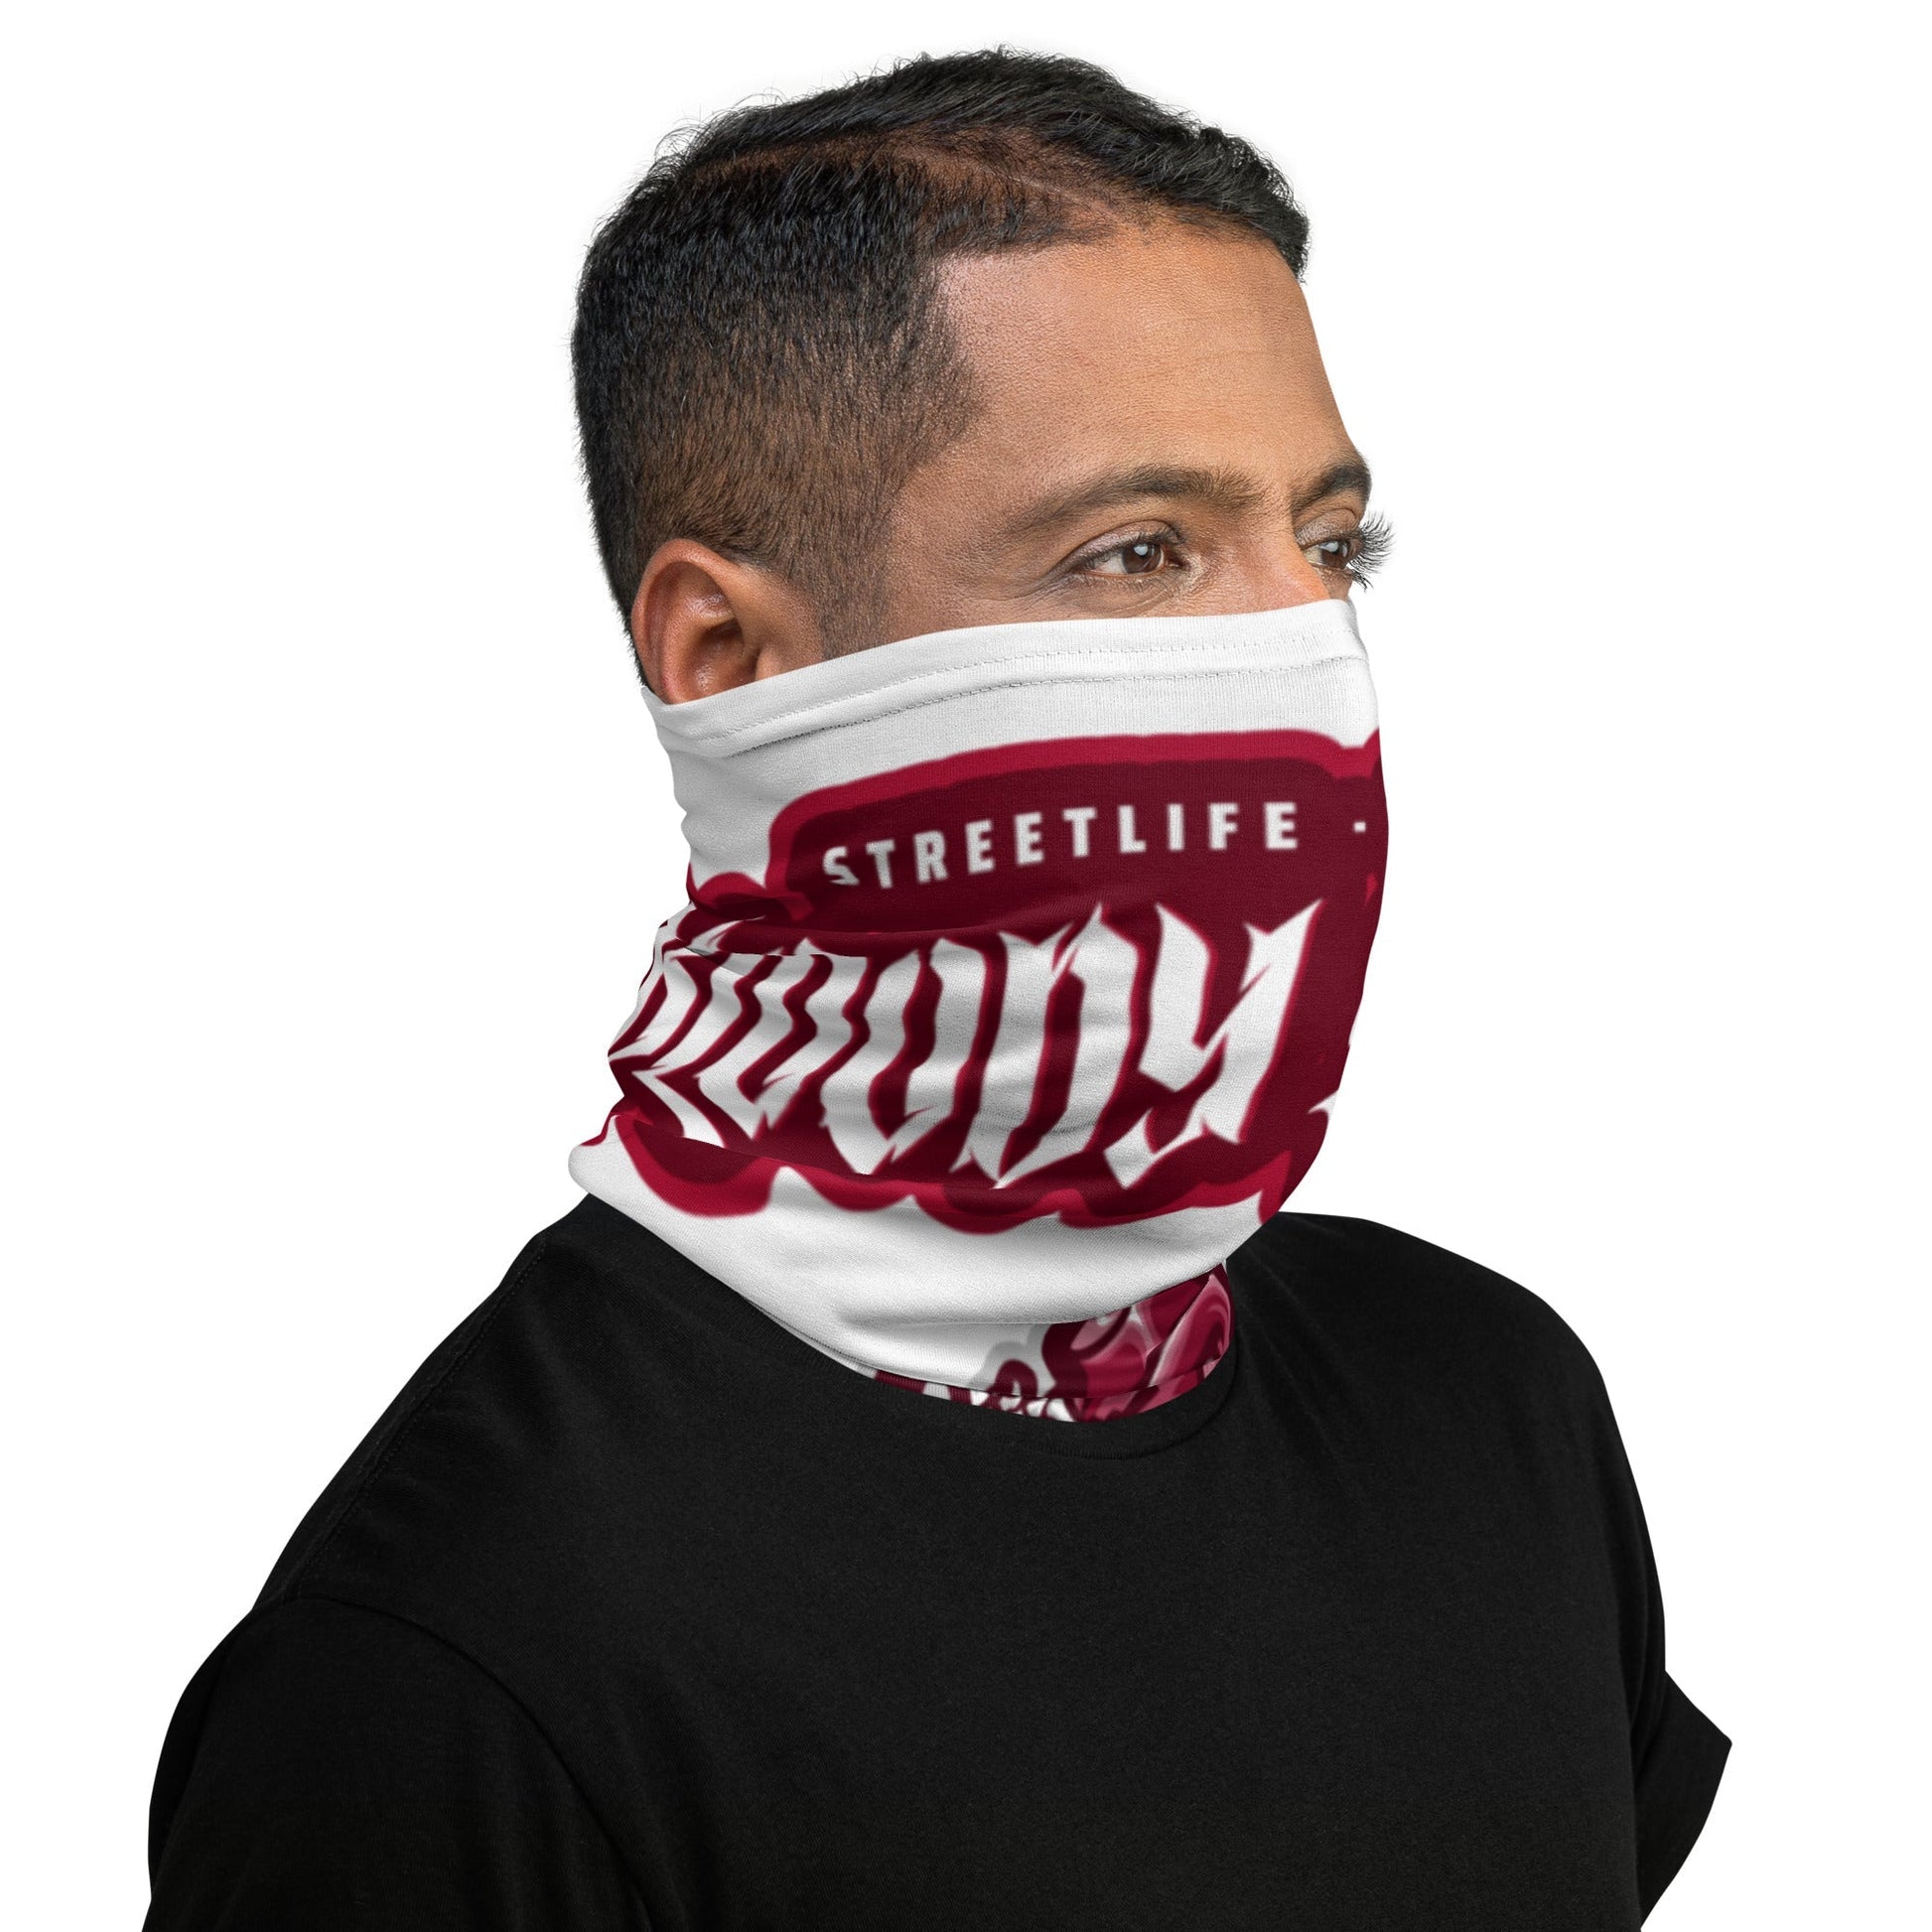 Bloody Streets Streetwear Maske - BLOODY-STREETS.DE Streetwear Herren und Damen Hoodies, T-Shirts, Pullis